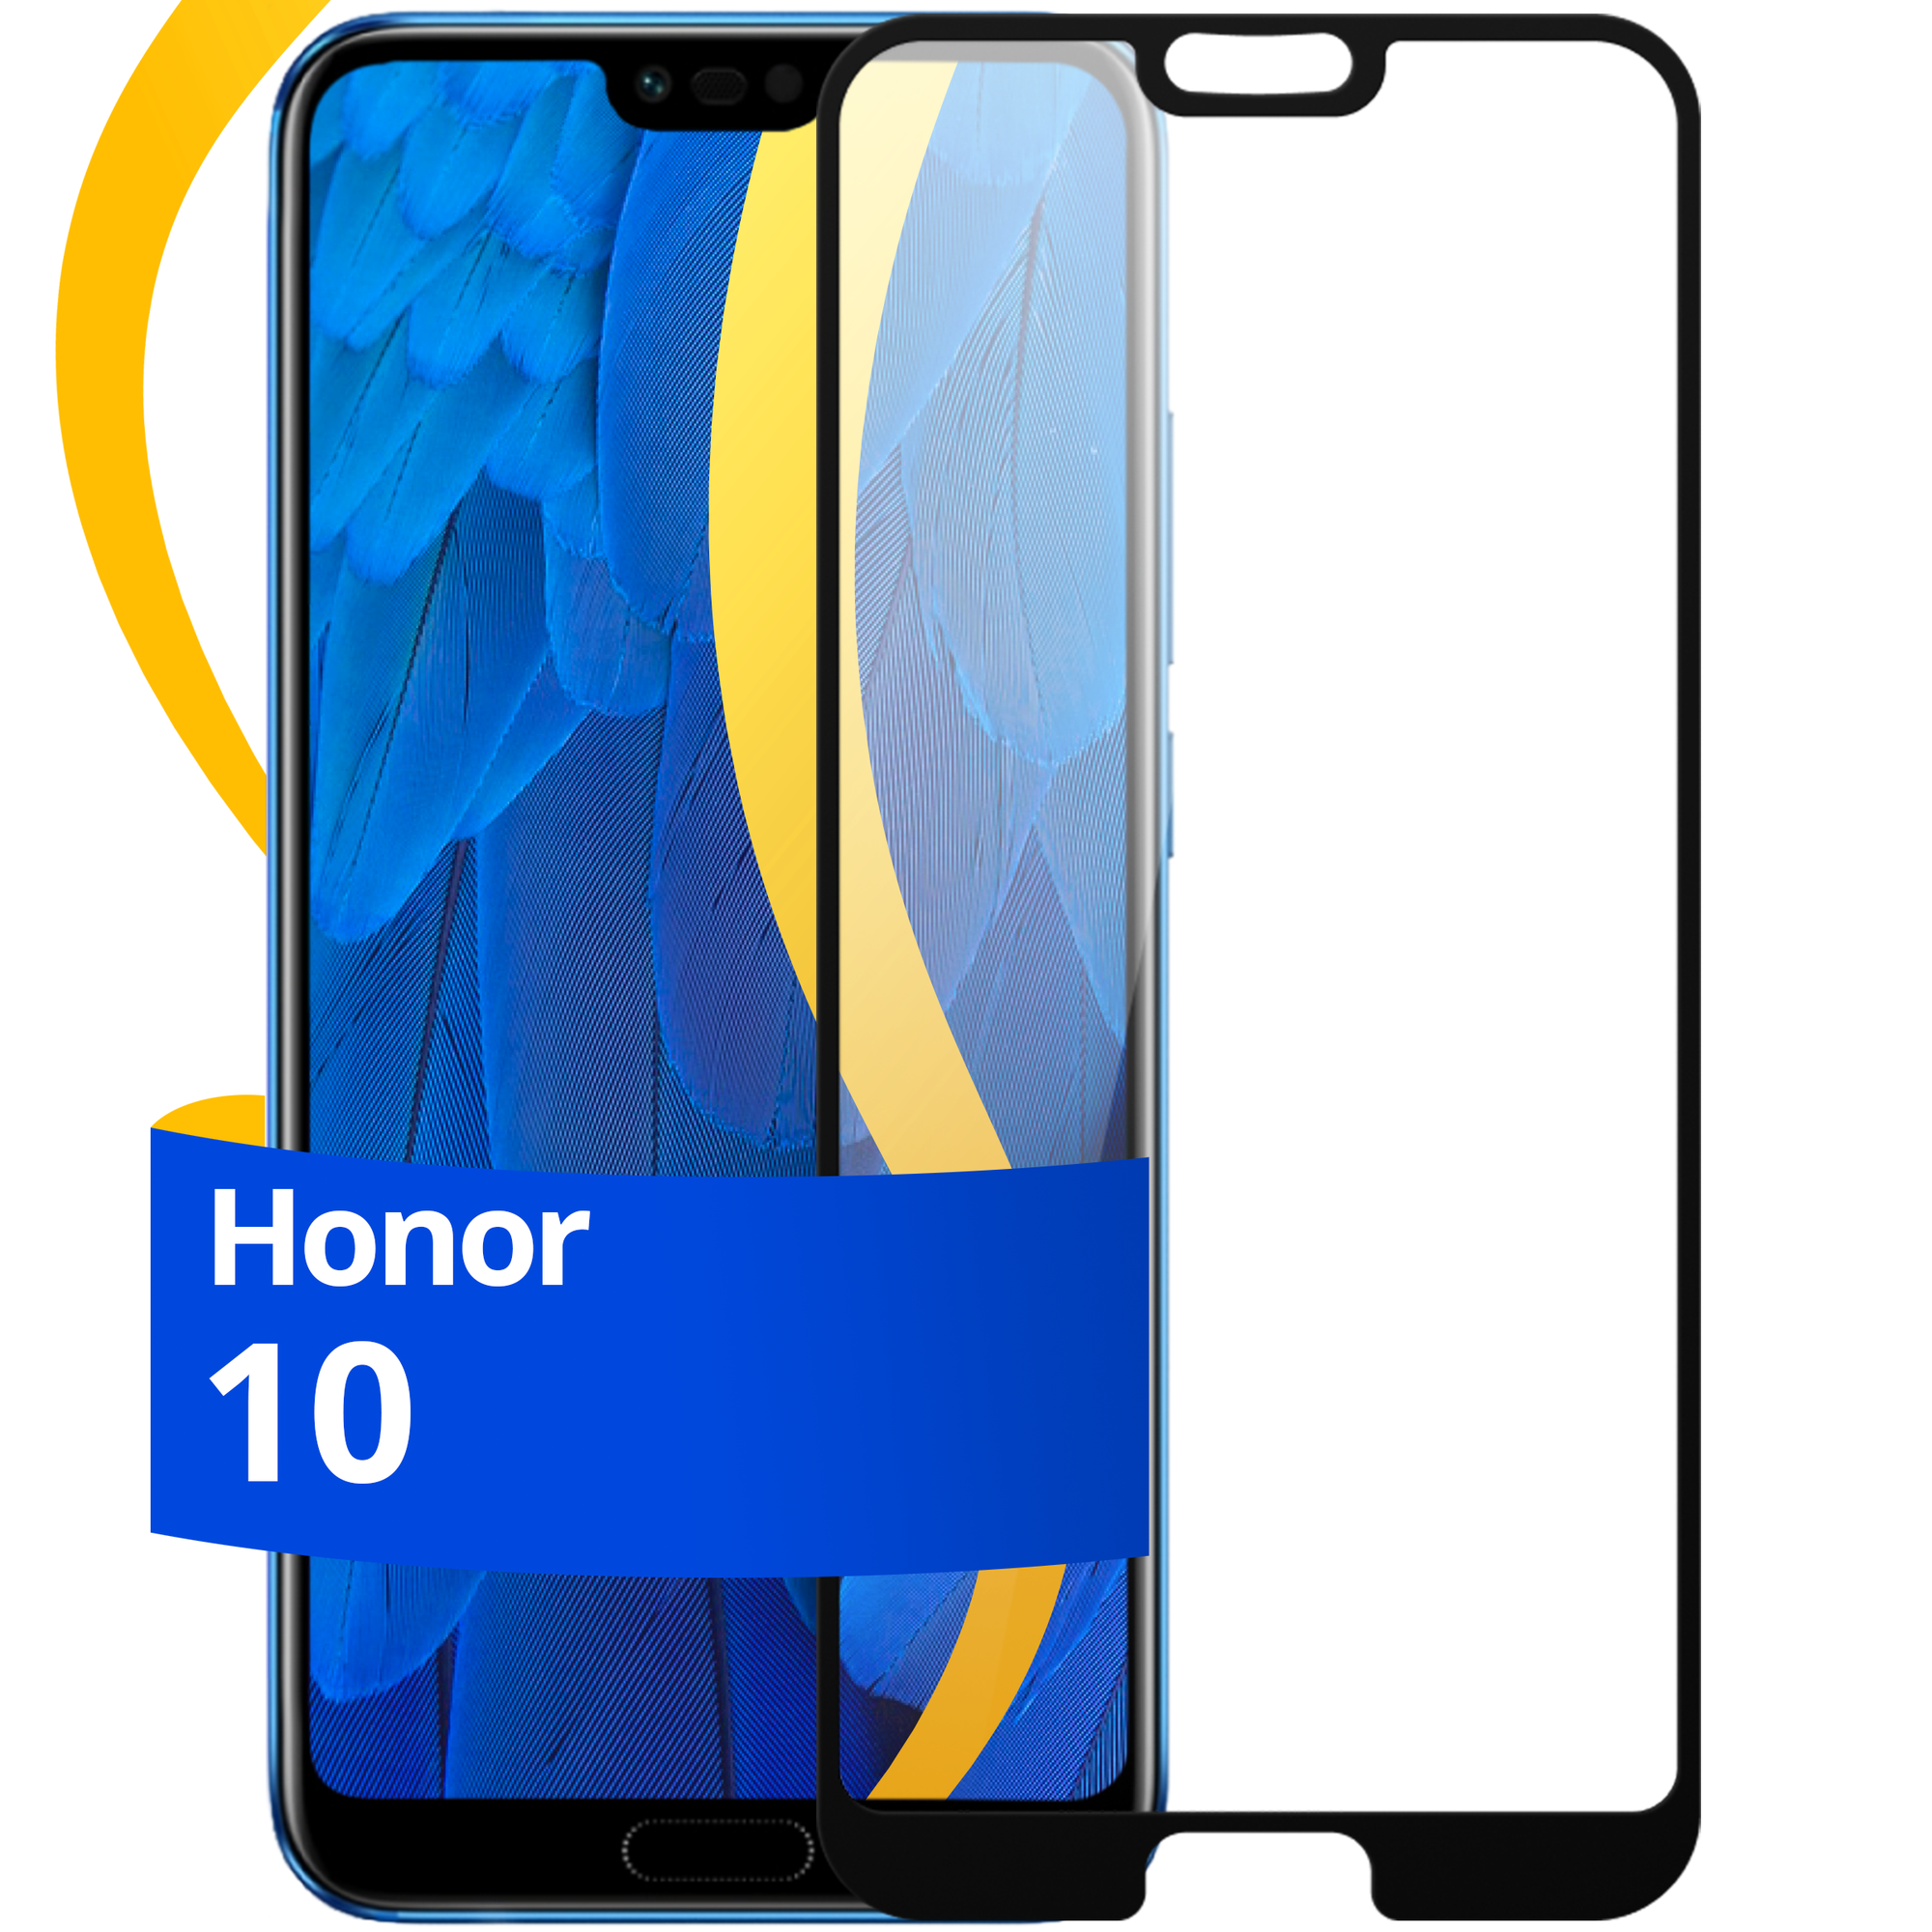 Глянцевое защитное стекло для телефона Huawei Honor 10 / Противоударное стекло с олеофобным покрытием на смартфон Хуавей Хонор 10